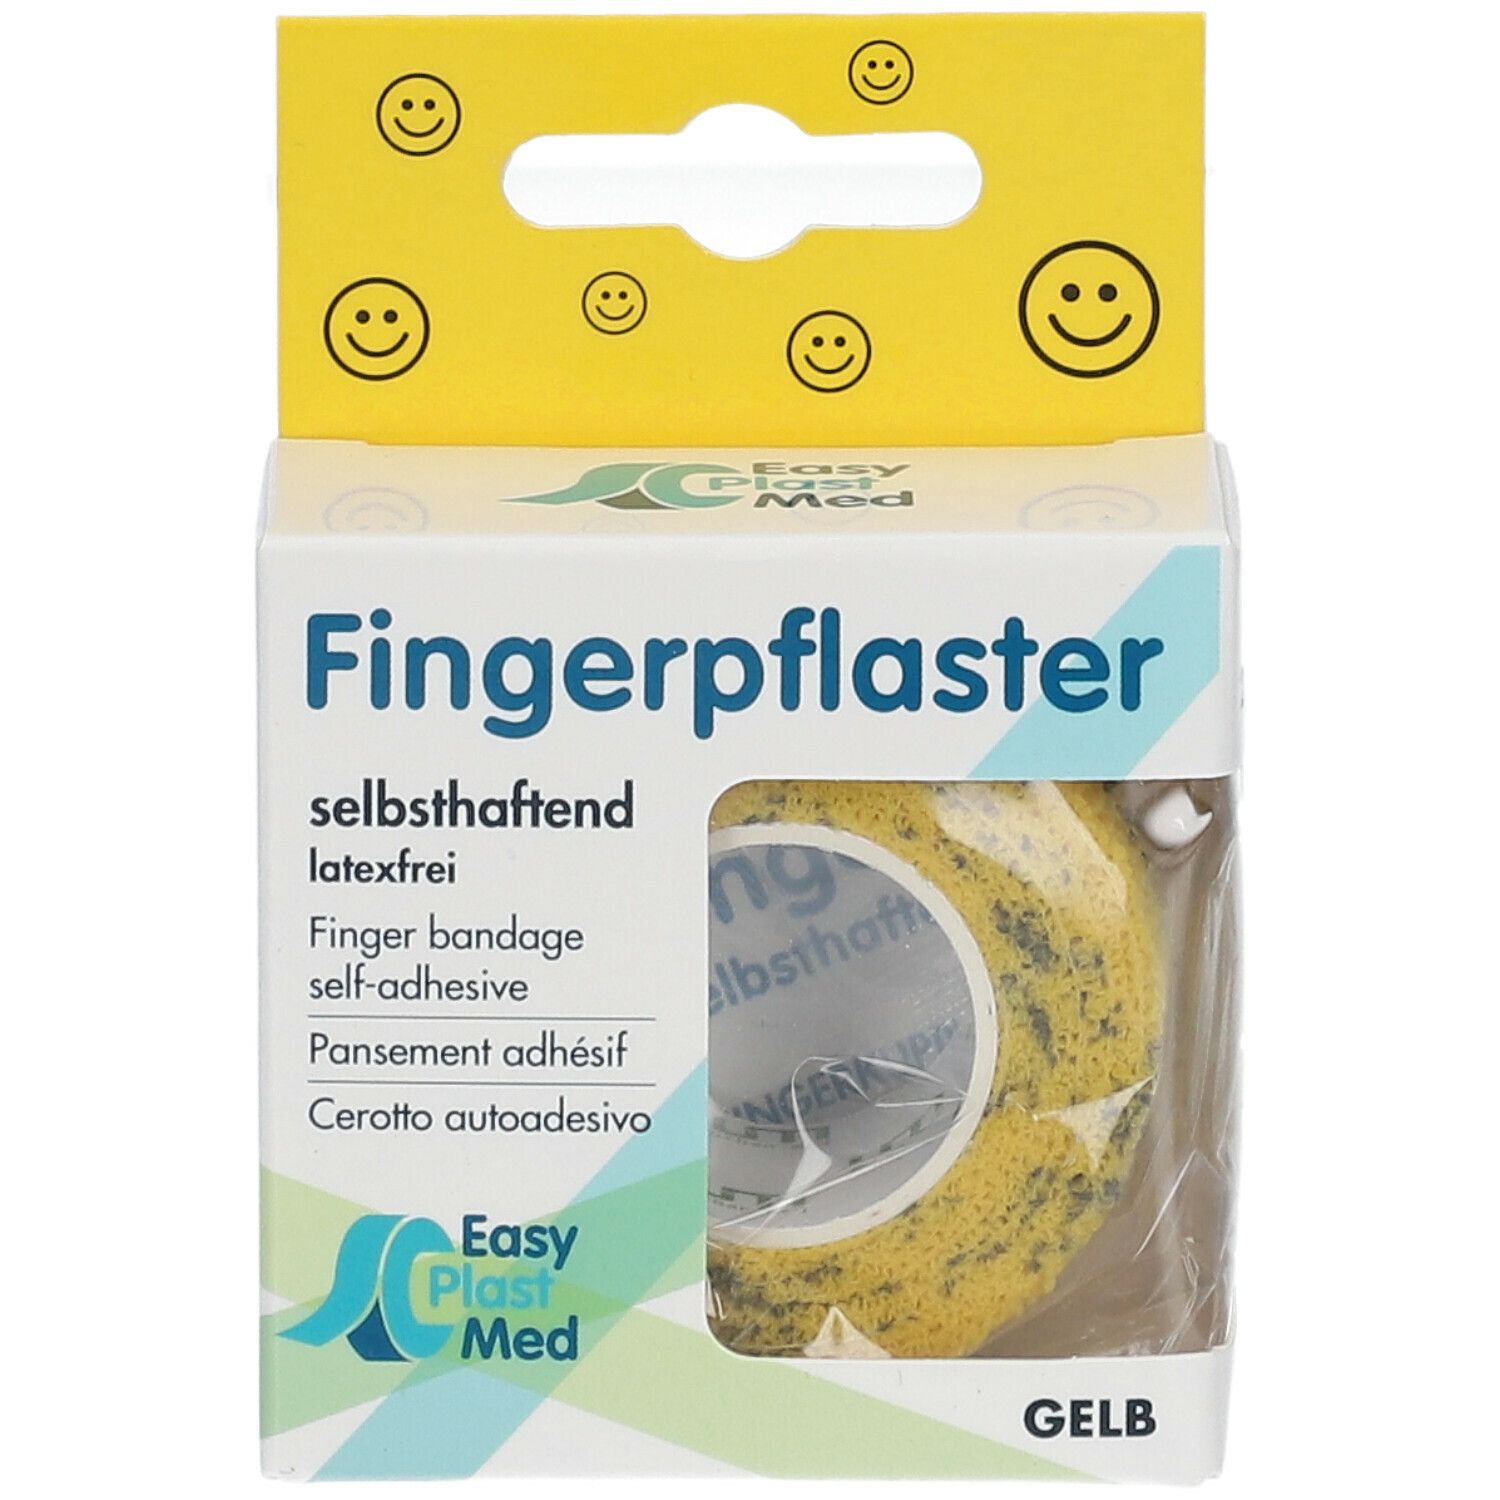 Easy Plast Med Fingerpflaster 2,5 cm x 5 m gelb Smileys